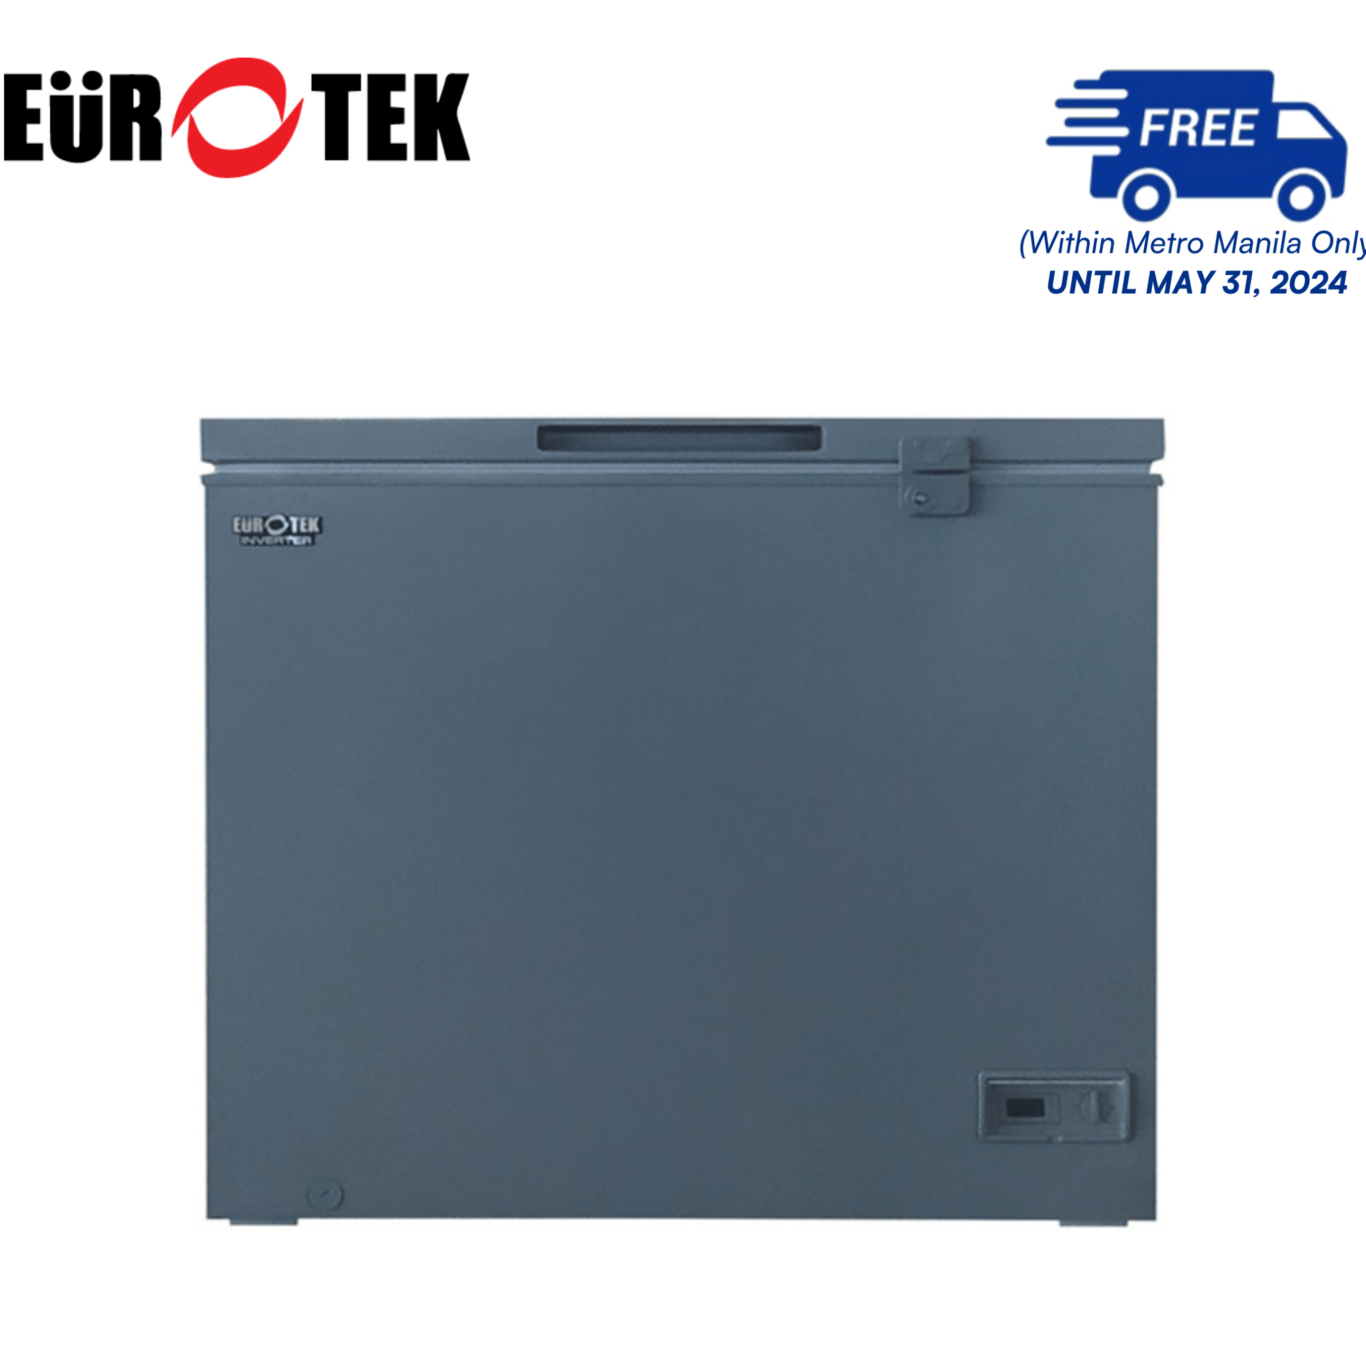 Eurotek ECF225IC